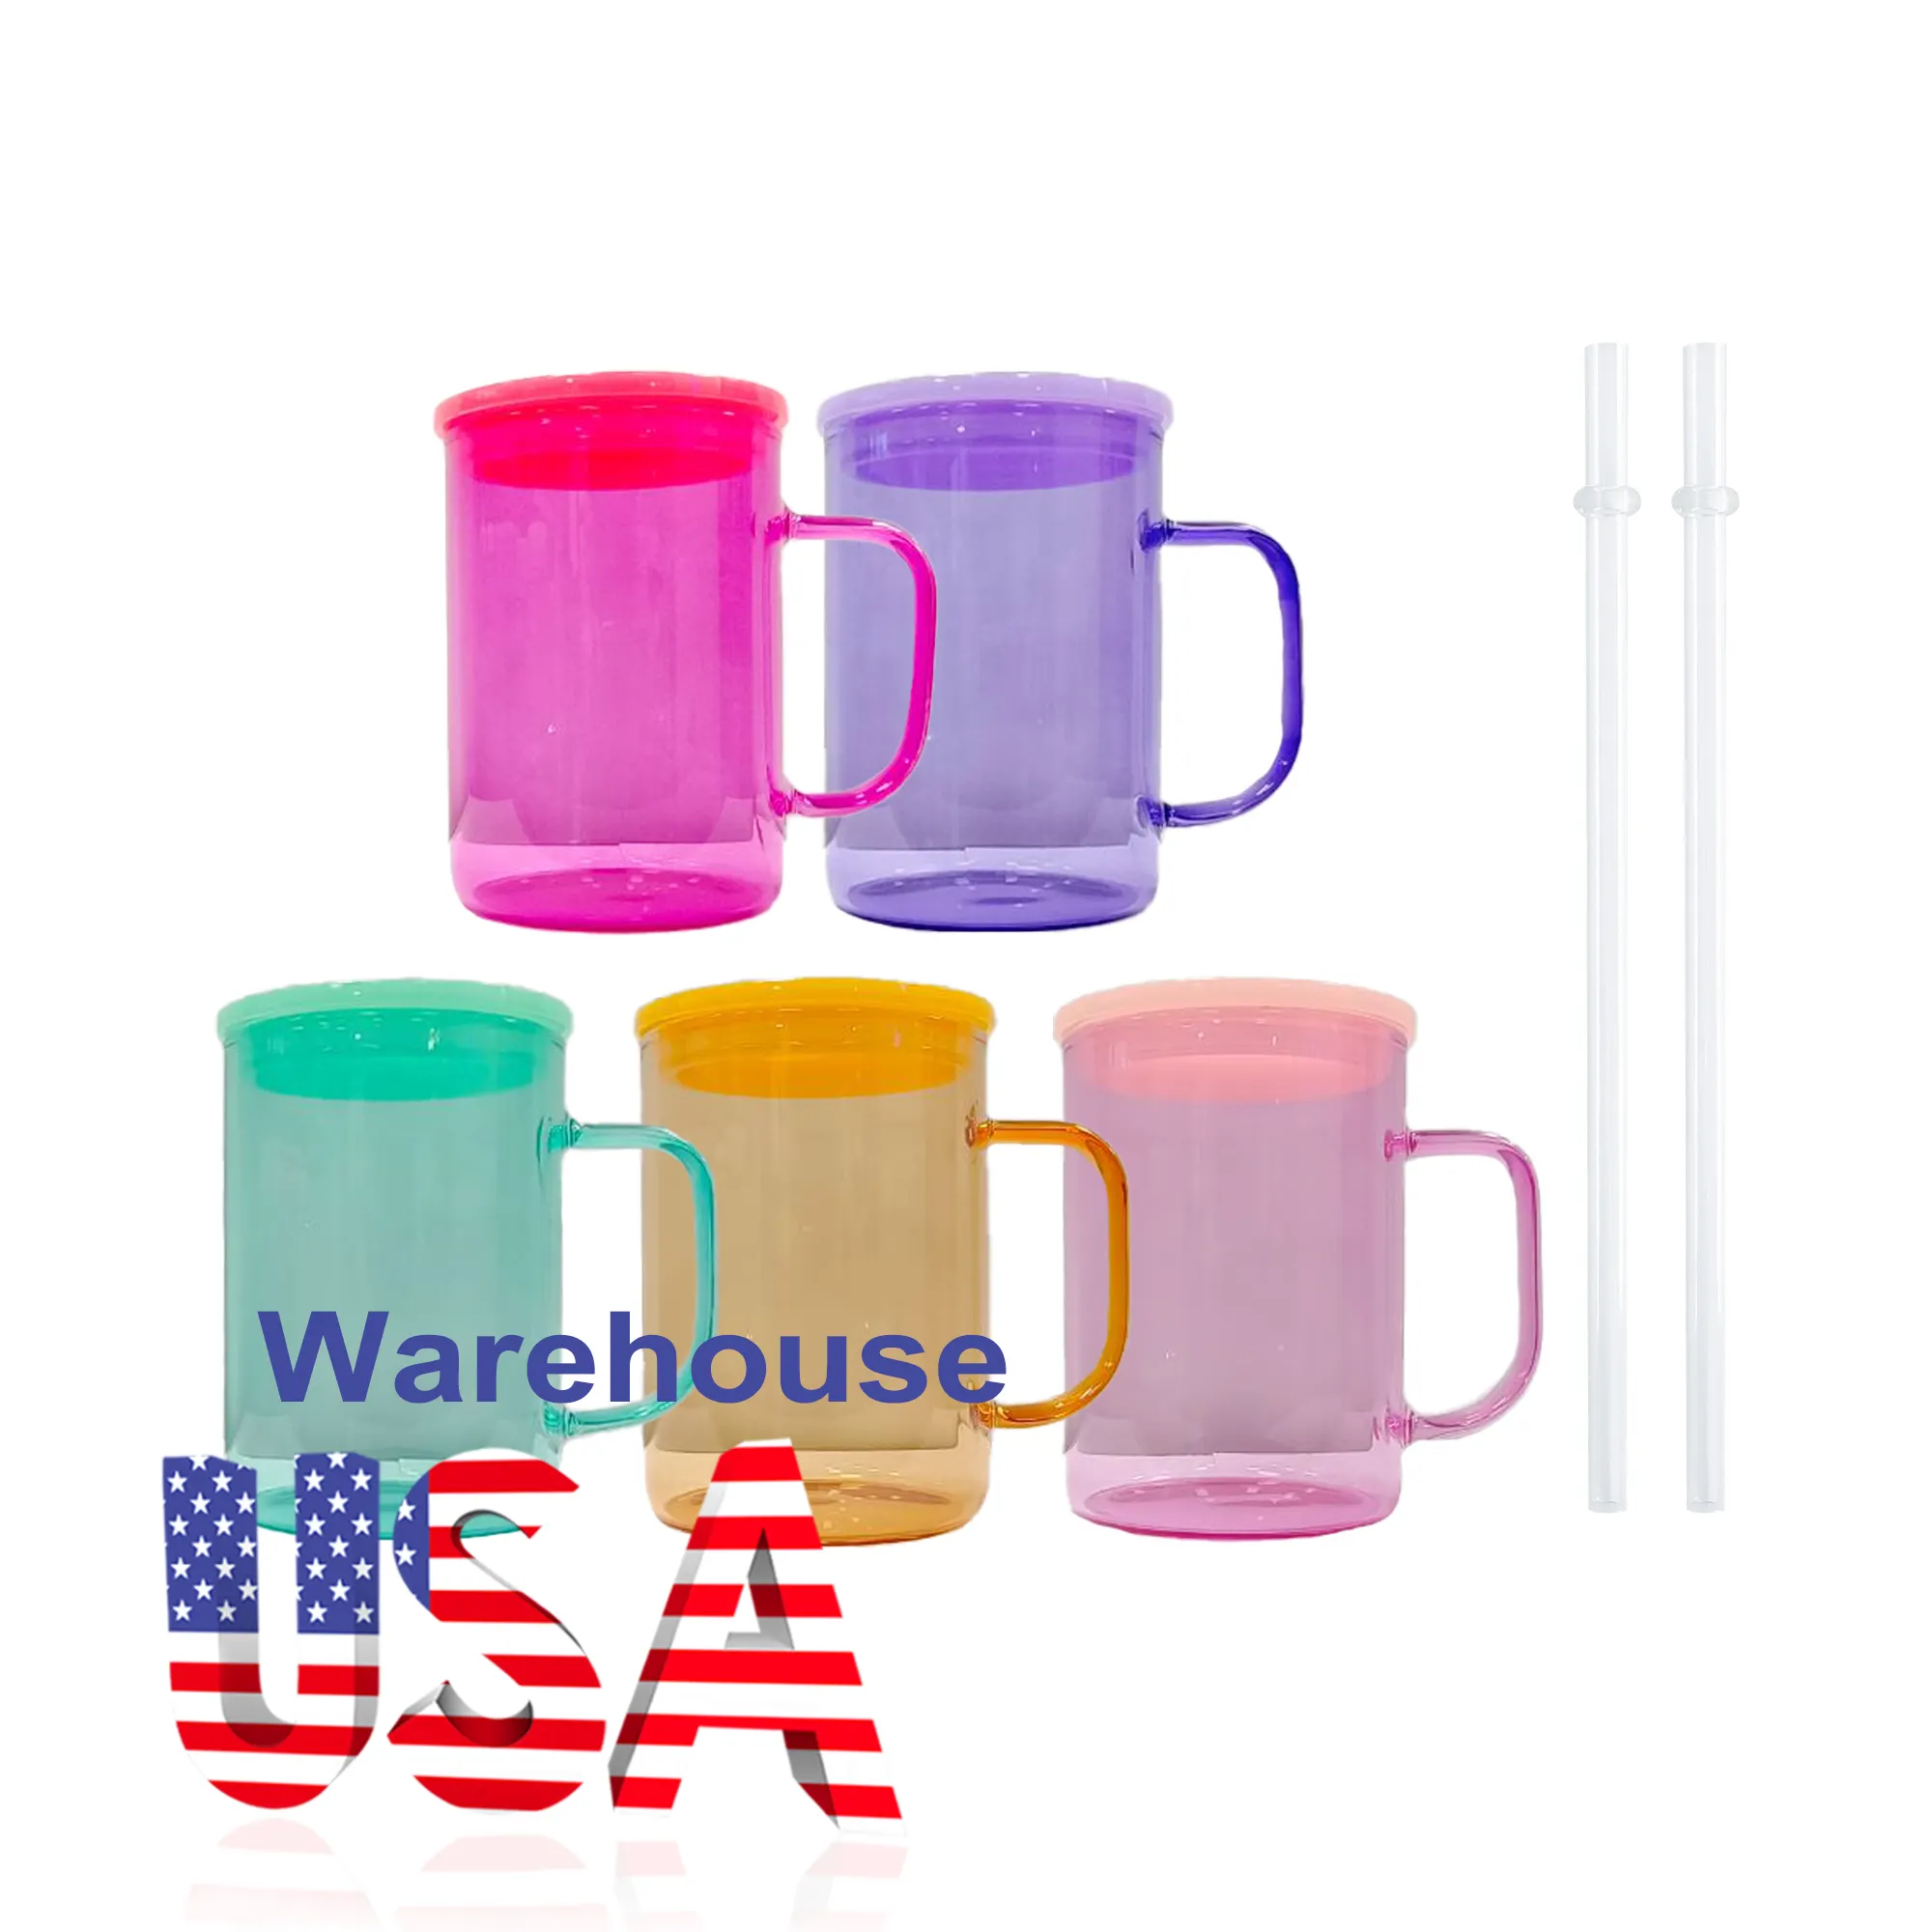 เหยือกแก้วเยลลี่สีใส17ออนซ์พร้อมฝาพลาสติกและหลอดว่างแบบระเหิดสีสันสดใสคลังสินค้าในสหรัฐอเมริกา